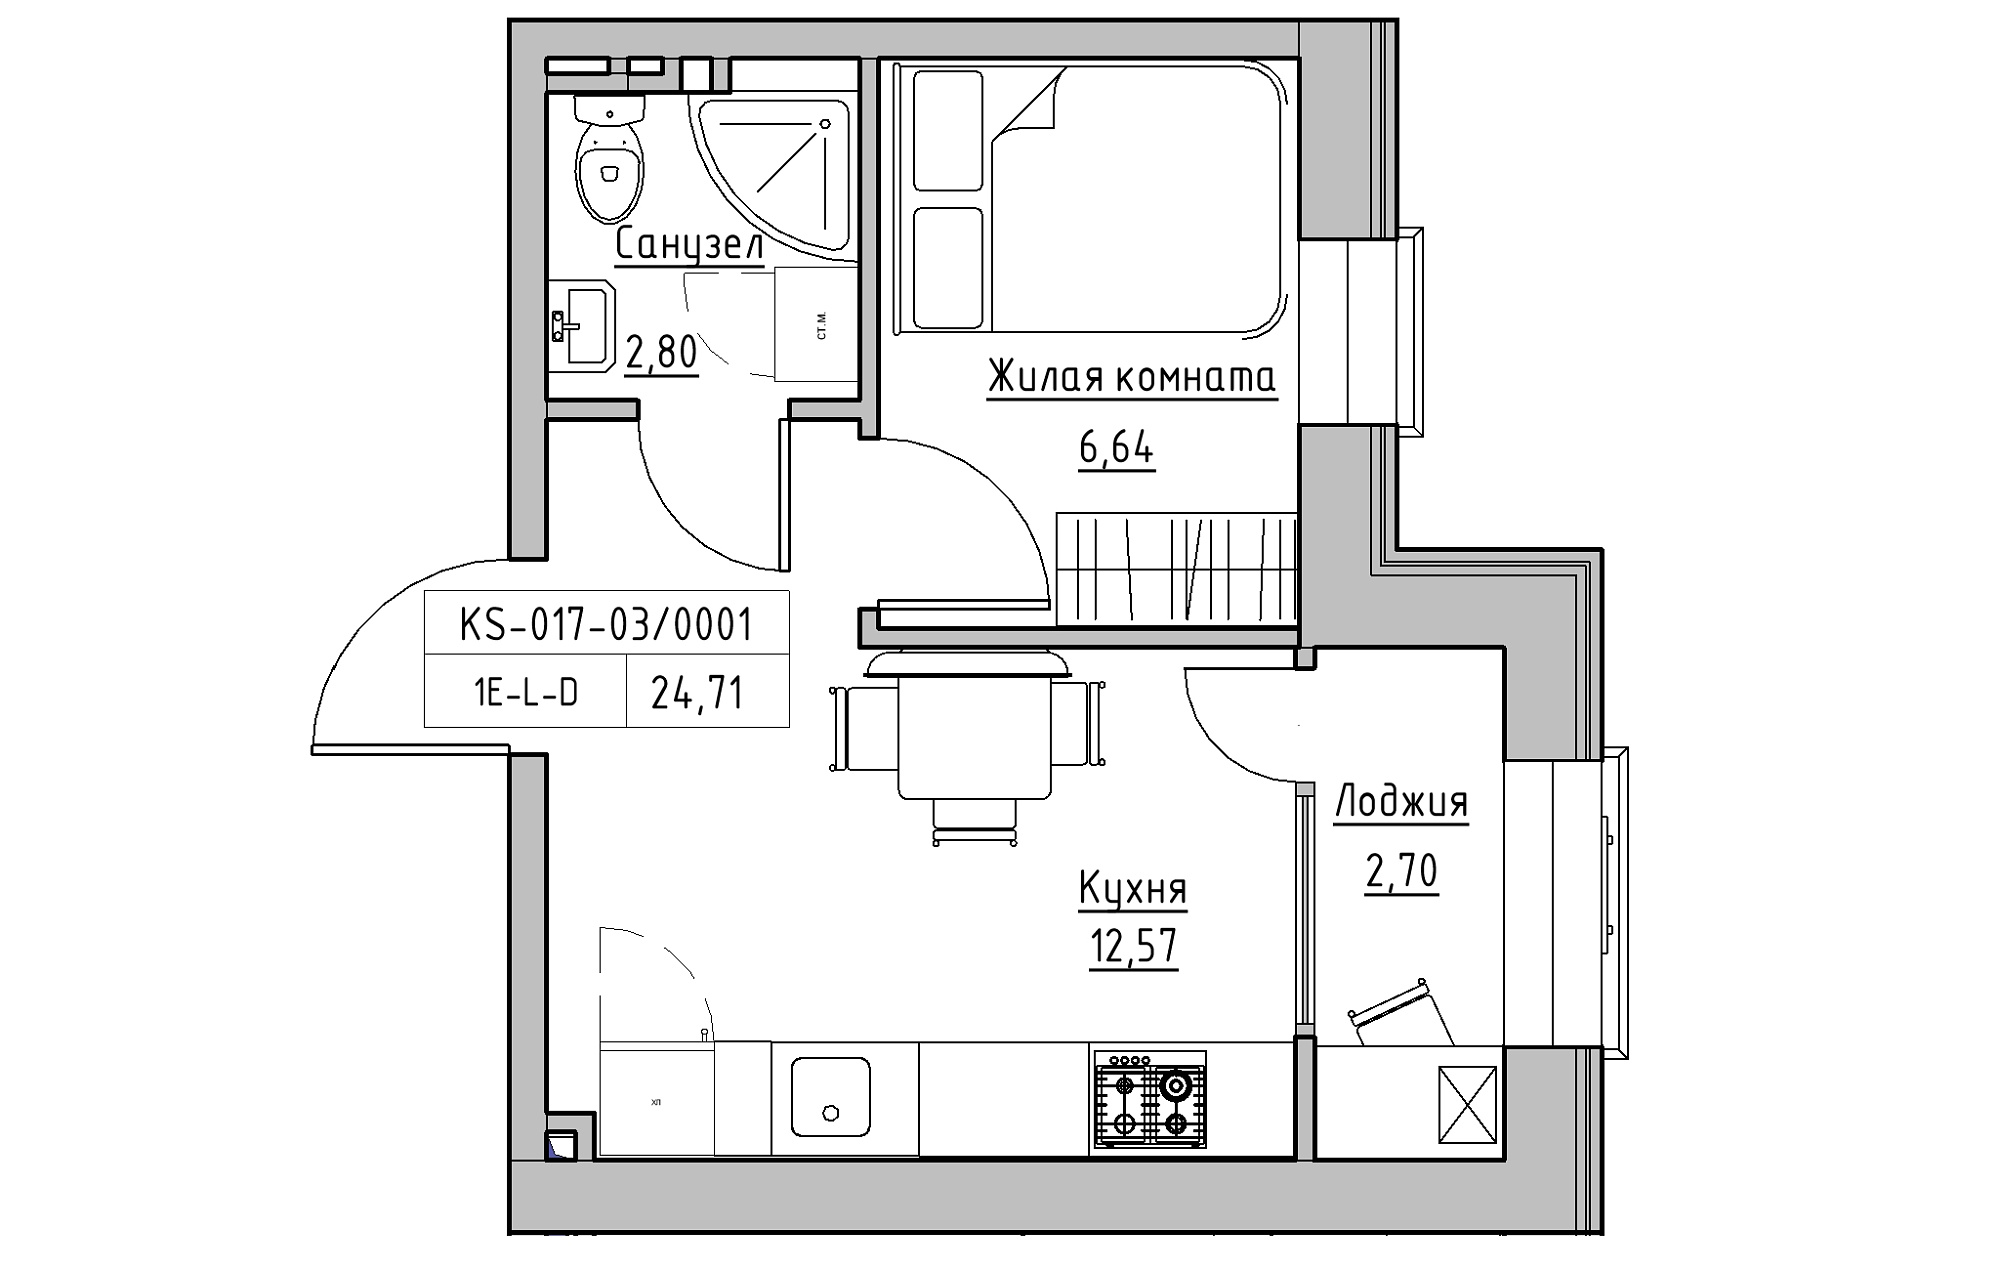 Планировка 1-к квартира площей 24.71м2, KS-017-03/0001.